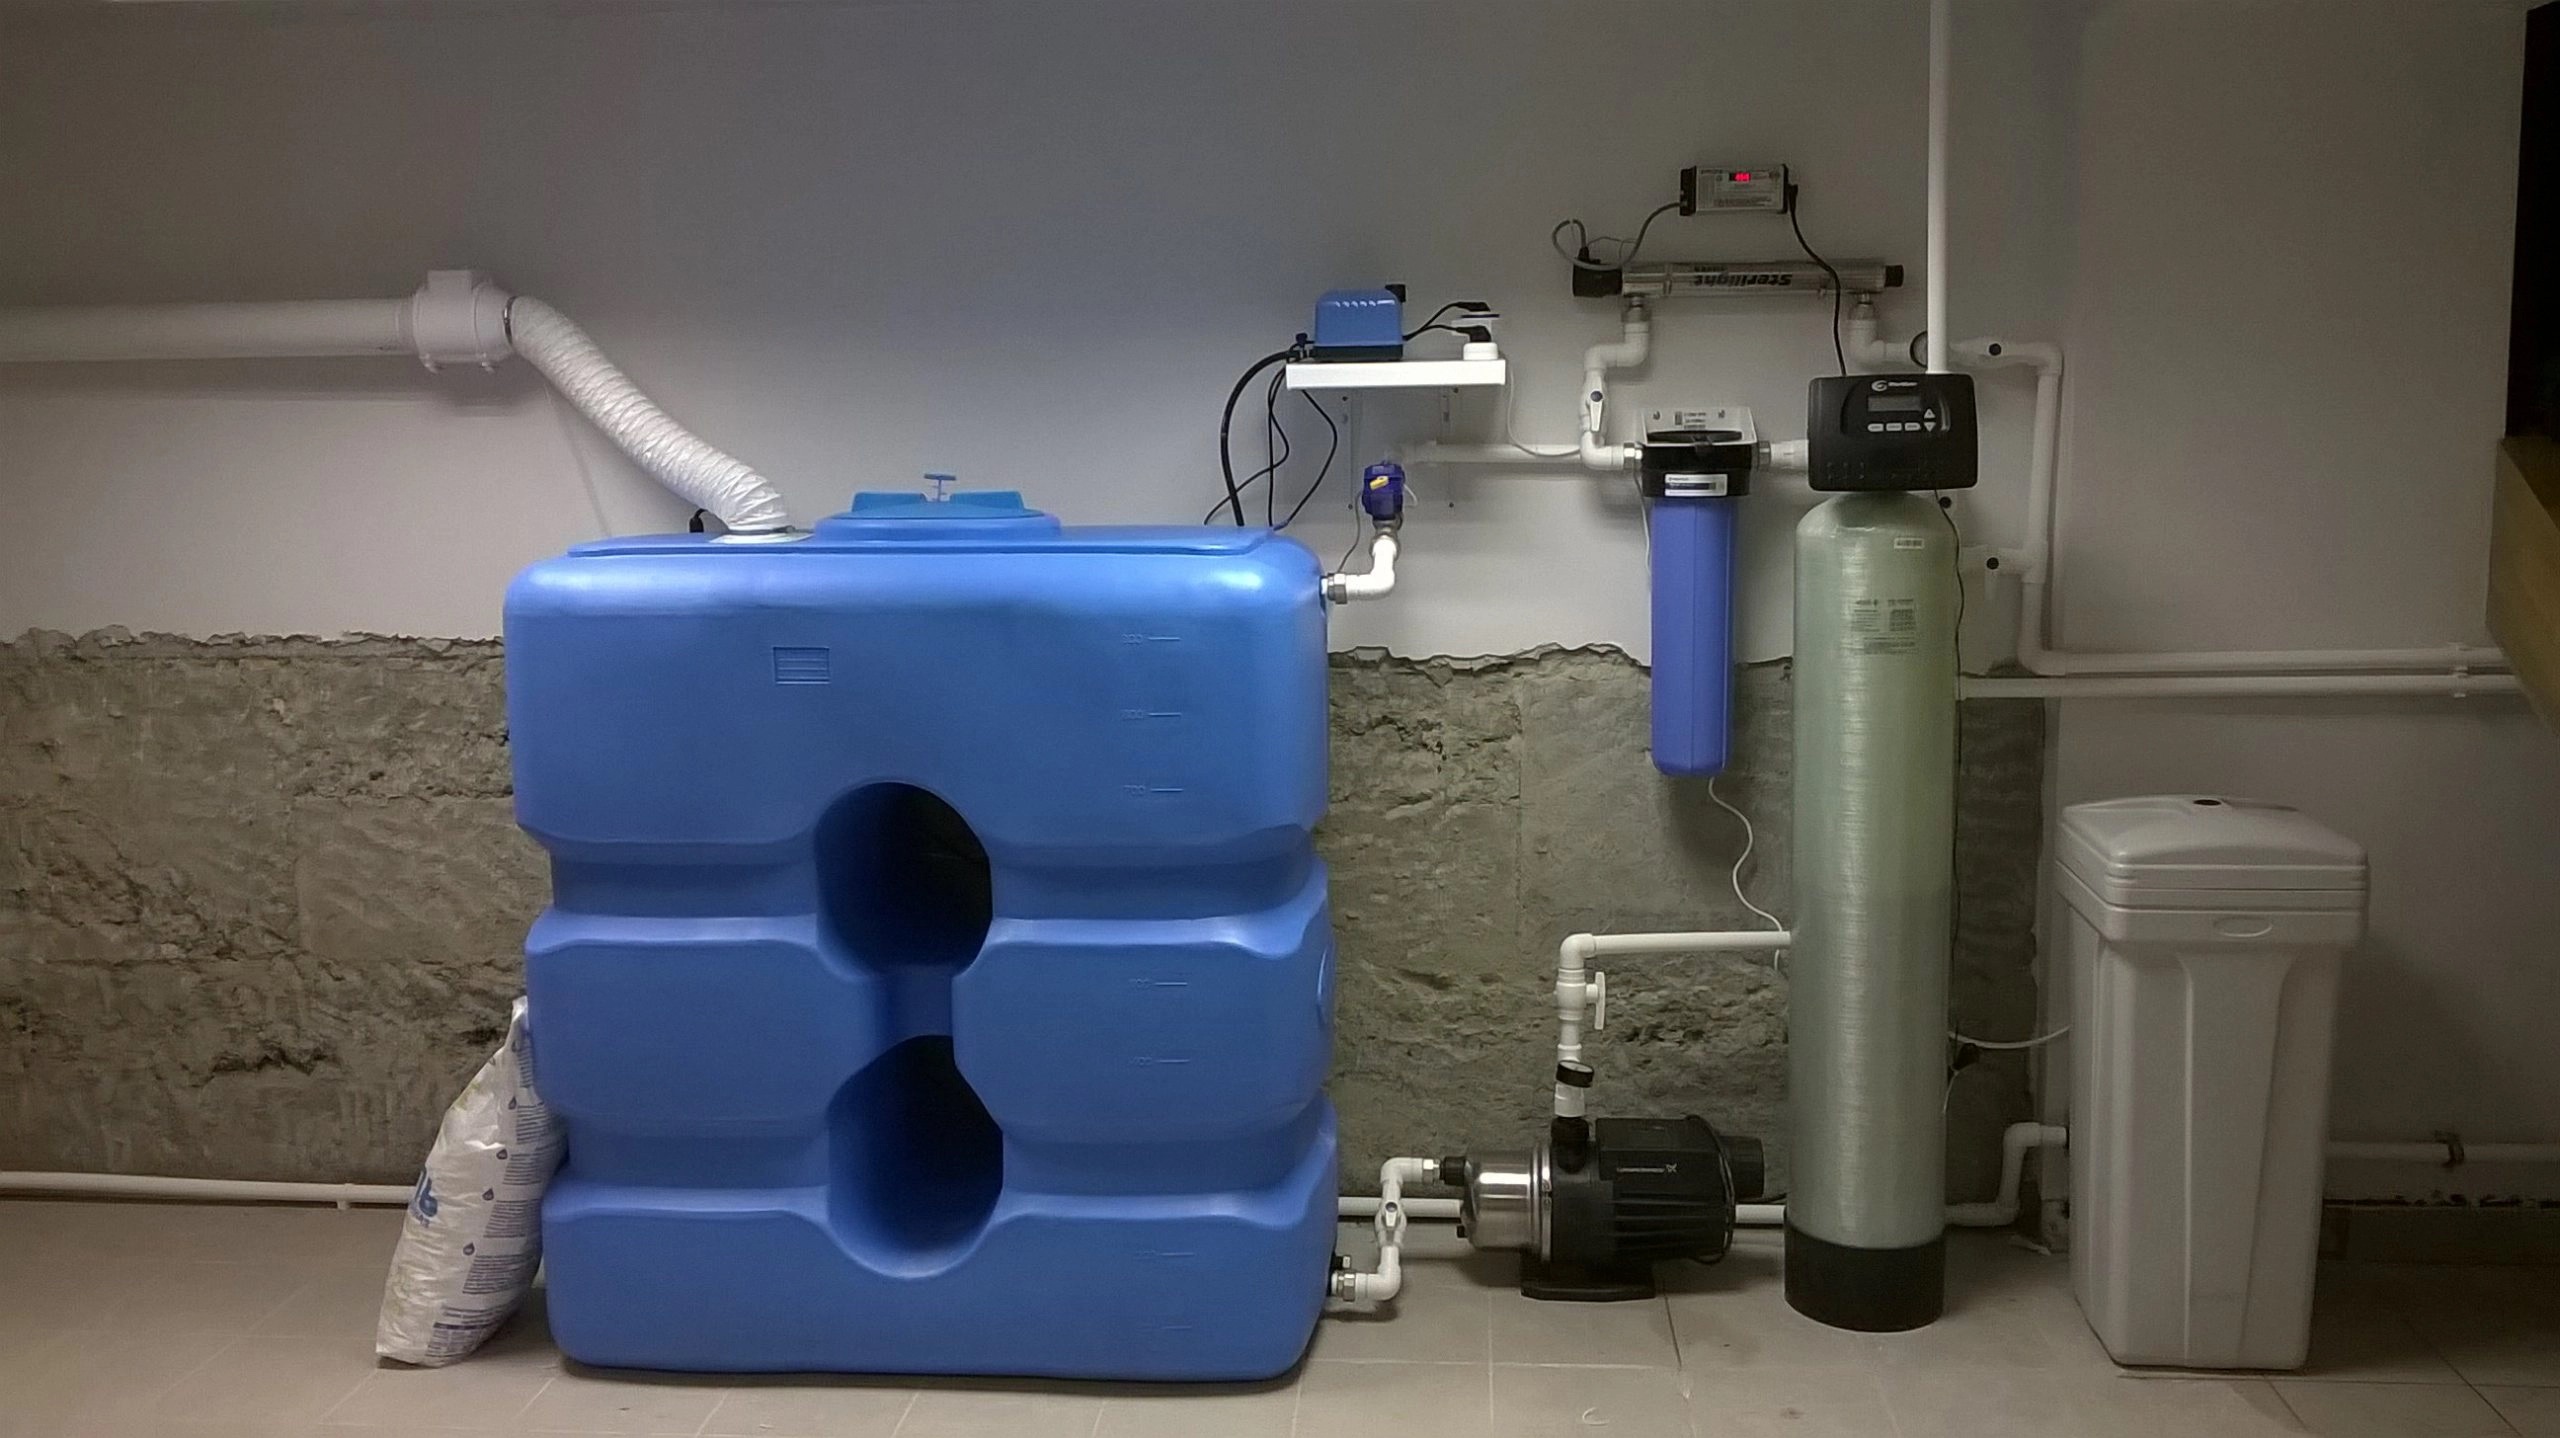 Очистка воды на 5. Система водоочистки с накопительным баком. Система очистки воды с аэрацией. Аэратор для обезжелезивания воды из скважины. Система очистки воды с накопительным баком для воды 500л.